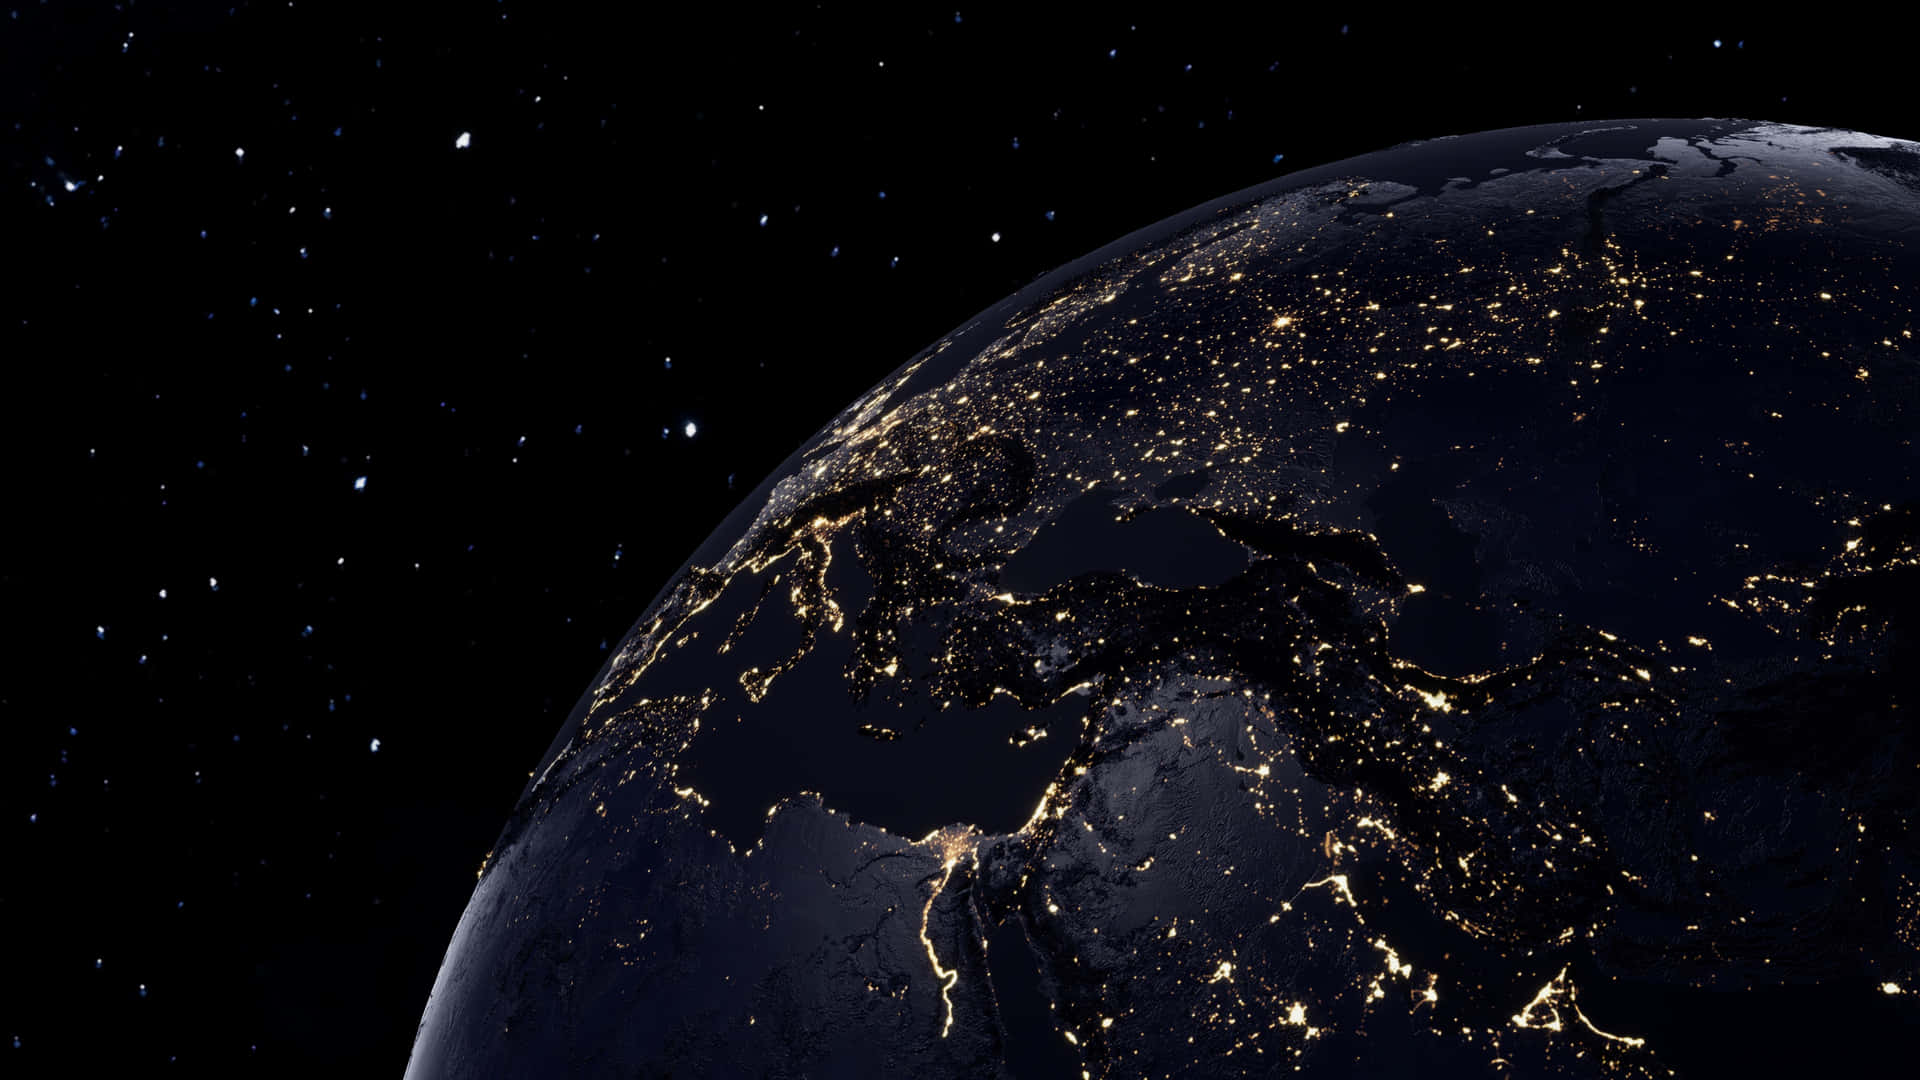 En fantastisk udsigt til Jorden fra rummet, som reflekterer de mange farver af planeten. Wallpaper